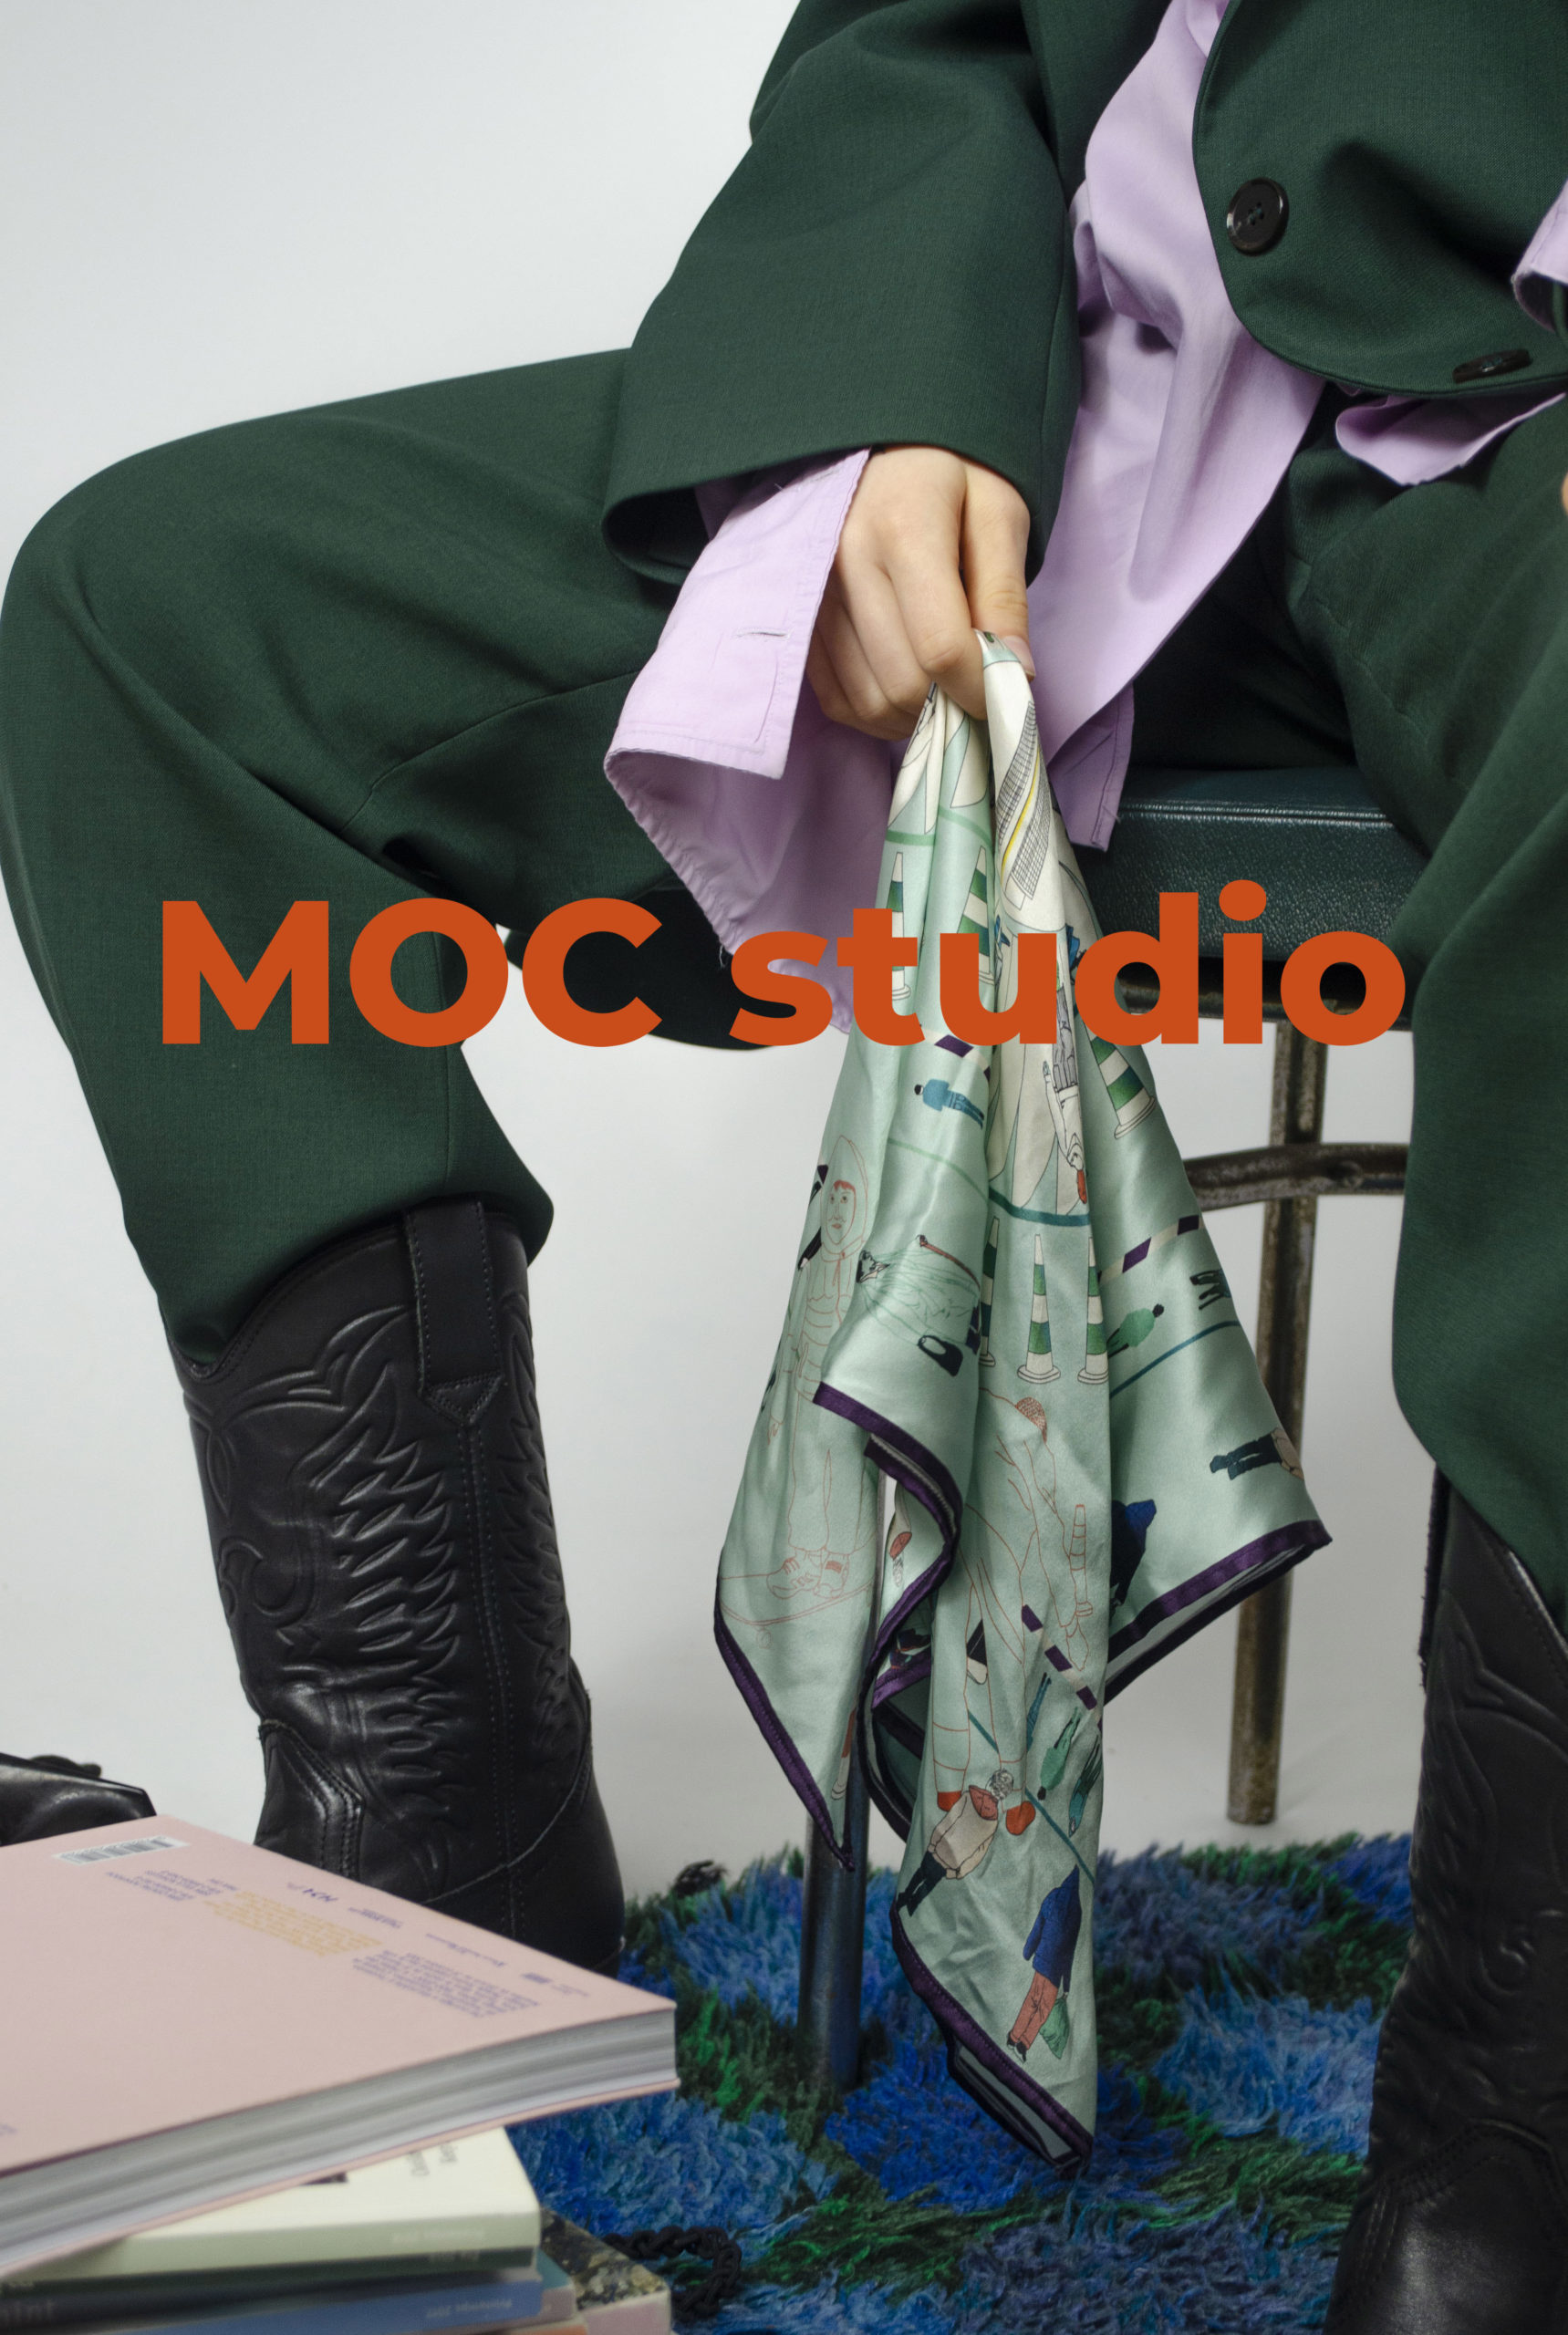 MOC studio